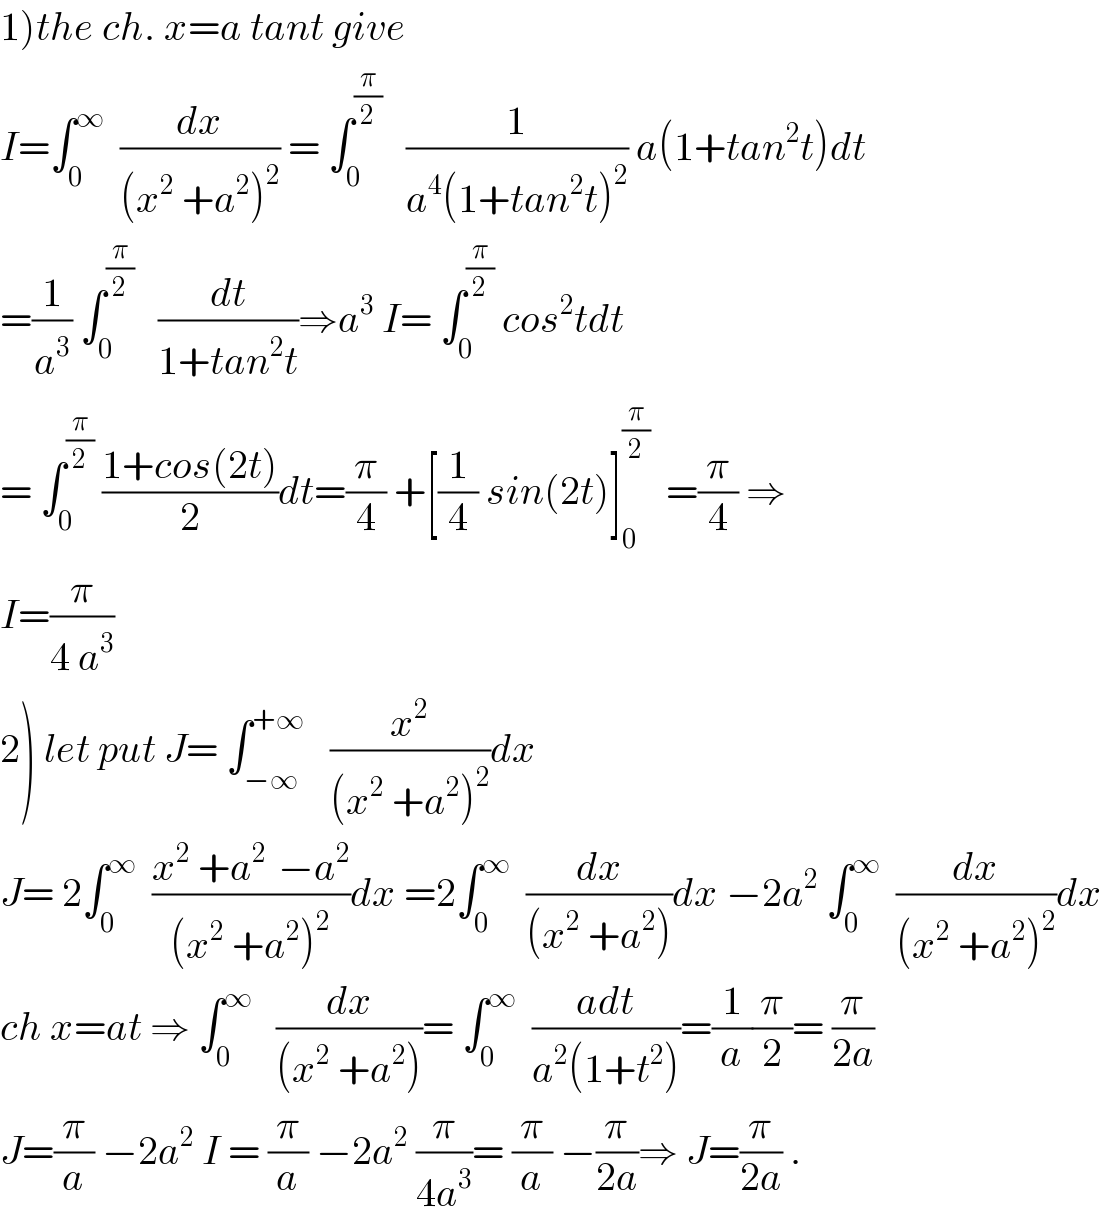 1)the ch. x=a tant give  I=∫_0 ^∞   (dx/((x^2  +a^2 )^2 )) = ∫_0 ^(π/2)    (1/(a^4 (1+tan^2 t)^2 )) a(1+tan^2 t)dt  =(1/a^3 ) ∫_0 ^(π/2)    (dt/(1+tan^2 t))⇒a^3  I= ∫_0 ^(π/2)  cos^2 tdt  = ∫_0 ^(π/2)  ((1+cos(2t))/2)dt=(π/4) +[(1/4) sin(2t)]_0 ^(π/2)   =(π/4) ⇒  I=(π/(4 a^3 ))  2) let put J= ∫_(−∞) ^(+∞)    (x^2 /((x^2  +a^2 )^2 ))dx  J= 2∫_0 ^∞   ((x^2  +a^(2 )  −a^2 )/((x^2  +a^2 )^2 ))dx =2∫_0 ^∞   (dx/((x^2  +a^2 )))dx −2a^2  ∫_0 ^∞   (dx/((x^2  +a^2 )^2 ))dx  ch x=at ⇒ ∫_0 ^∞    (dx/((x^2  +a^2 )))= ∫_0 ^∞   ((adt)/(a^2 (1+t^2 )))=(1/a)(π/2)= (π/(2a))  J=(π/a) −2a^2  I = (π/a) −2a^2  (π/(4a^3 ))= (π/a) −(π/(2a))⇒ J=(π/(2a)) .  